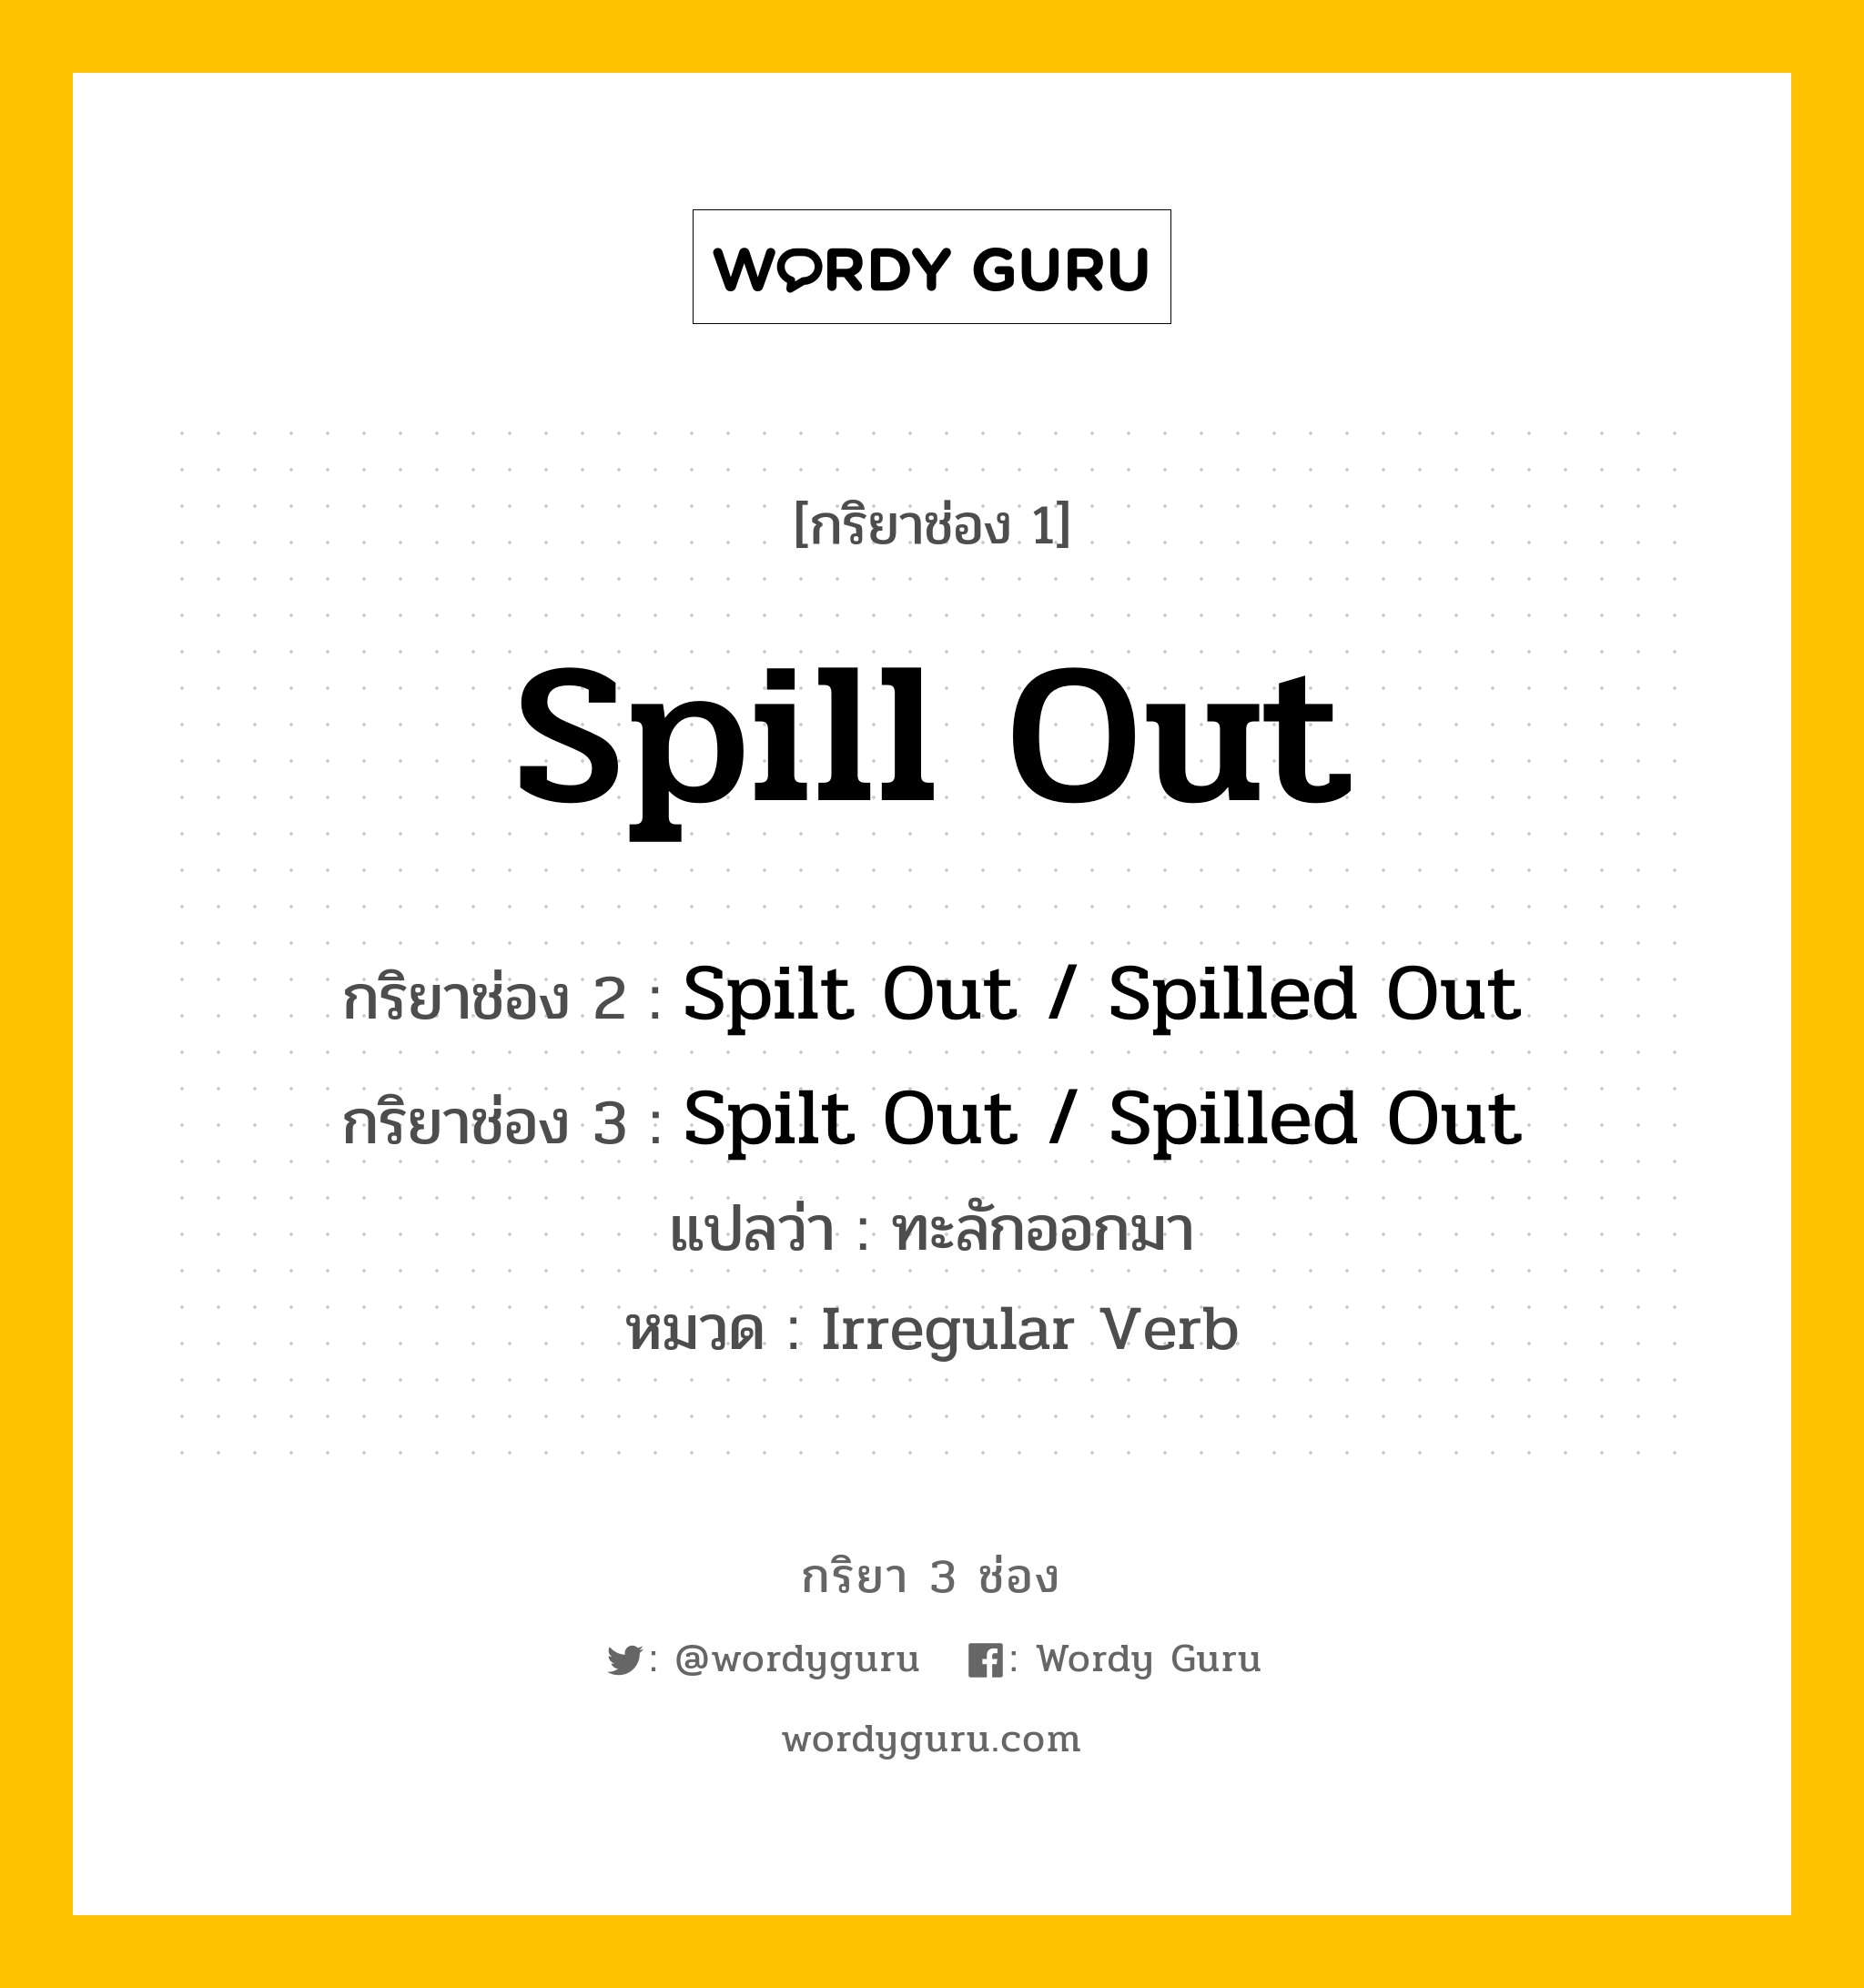 กริยา 3 ช่อง ของ Spill Out คืออะไร? มาดูคำอ่าน คำแปลกันเลย, กริยาช่อง 1 Spill Out กริยาช่อง 2 Spilt Out / Spilled Out กริยาช่อง 3 Spilt Out / Spilled Out แปลว่า ทะลักออกมา หมวด Irregular Verb หมวด Irregular Verb